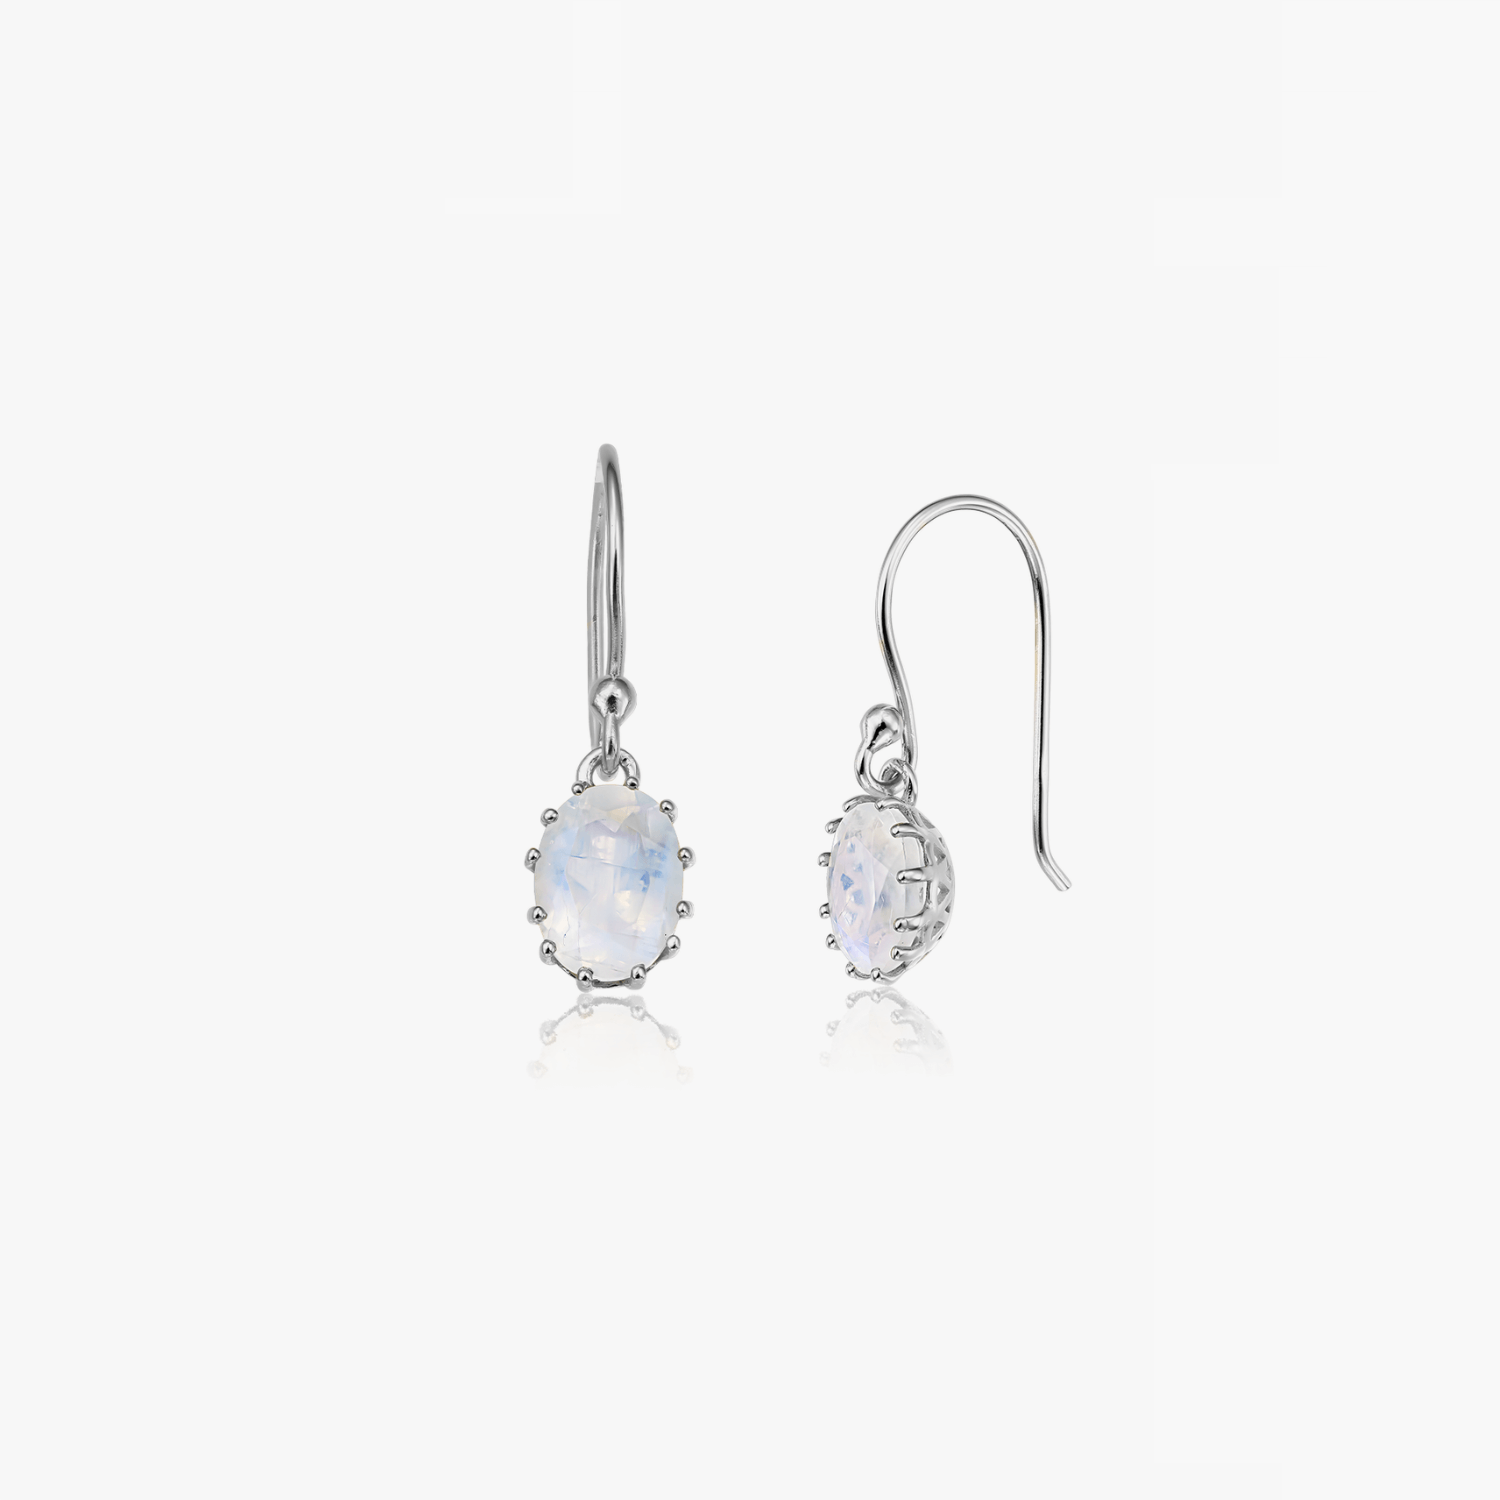 Serene silver earrings - Moonstone